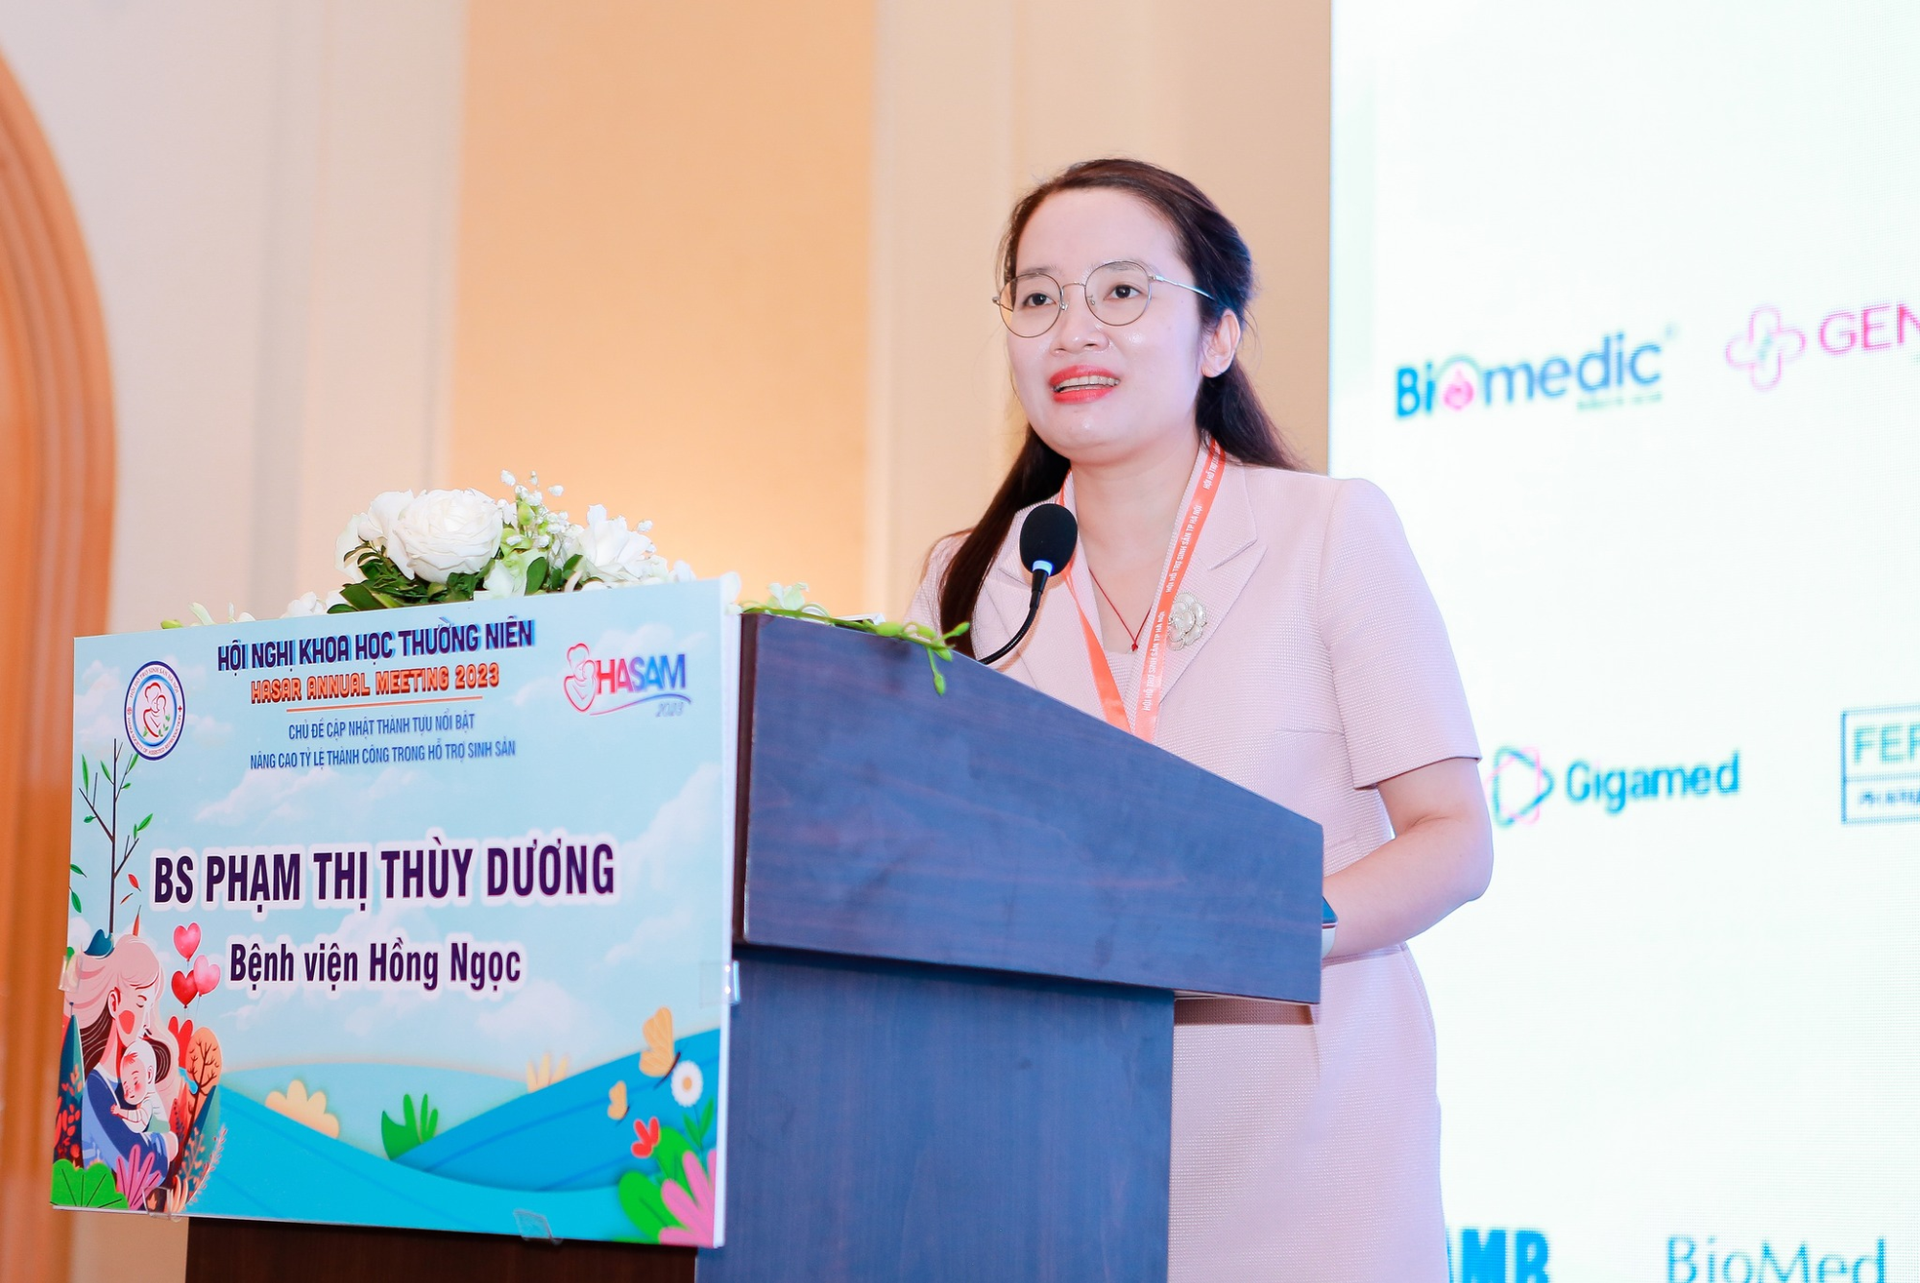 Bác sĩ Phạm Thị Thùy Dương phát biểu tại Hội nghị khoa học lớn nhất khu vực miền Bắc về chuyên đề kích thích buồng trứng nhẹ.